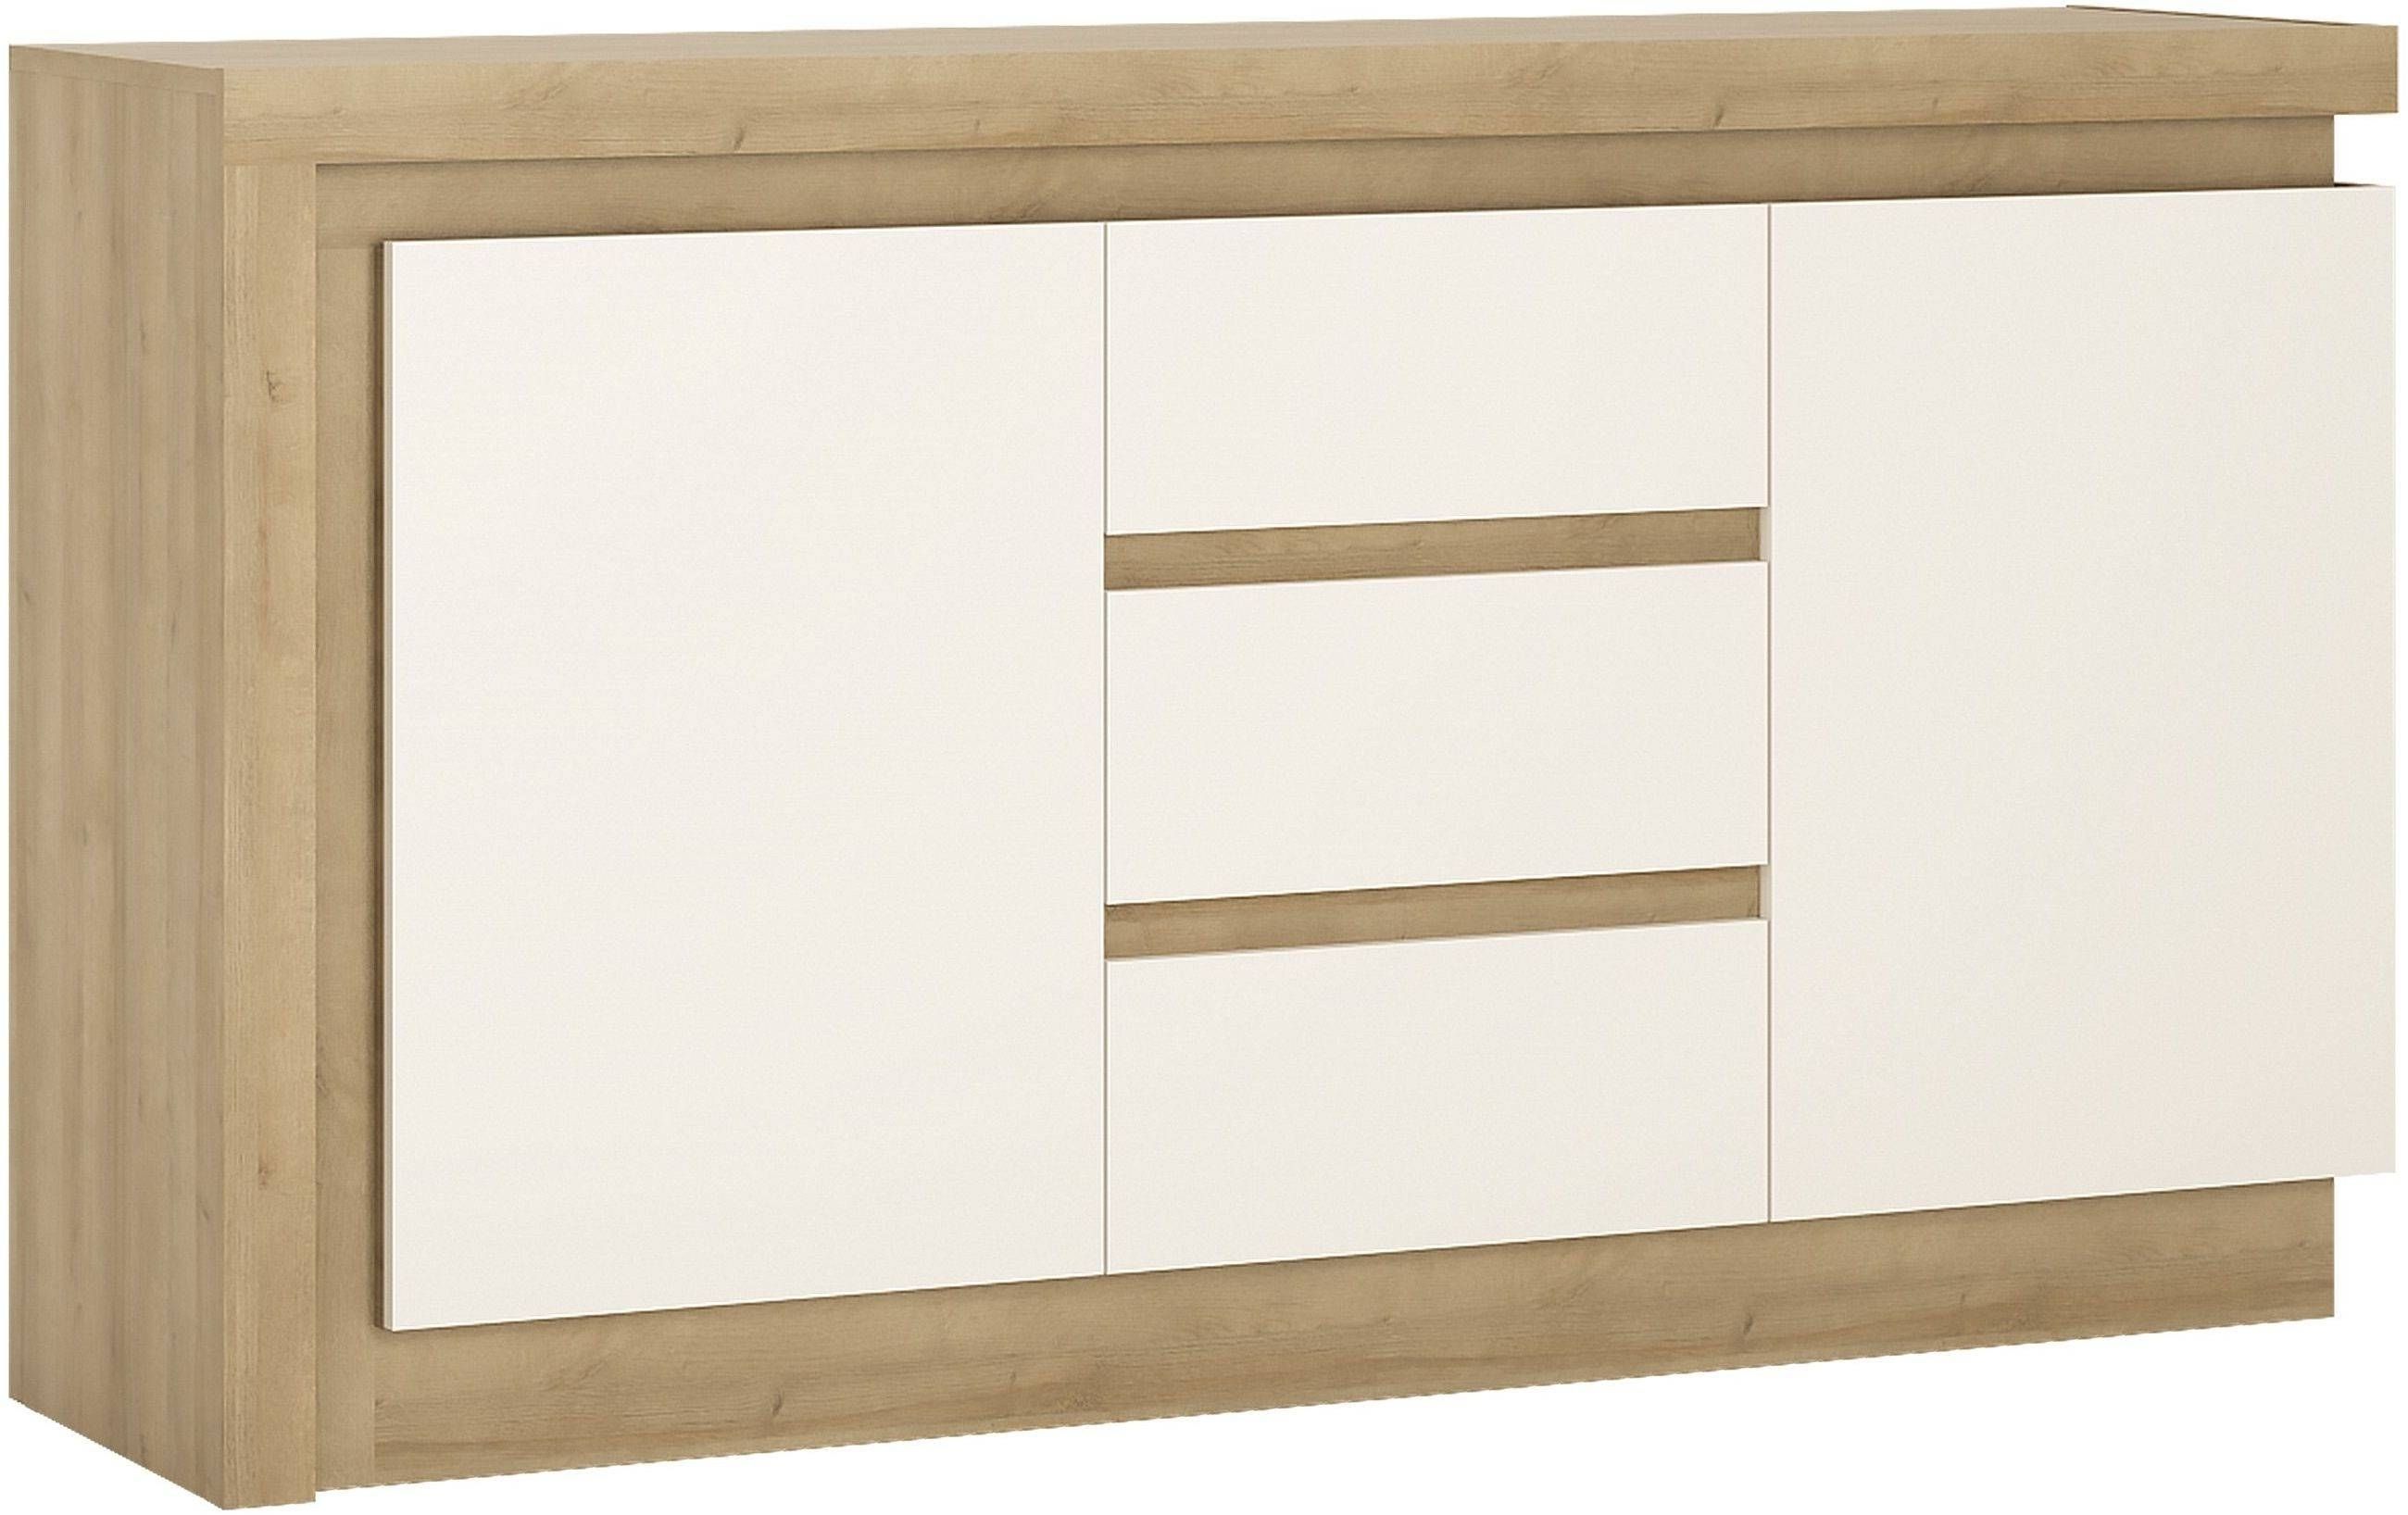 Buy Lyon Riviera Oak And White High Gloss Sideboard – 2 Door 3 Regarding High White Gloss Sideboards (View 12 of 15)